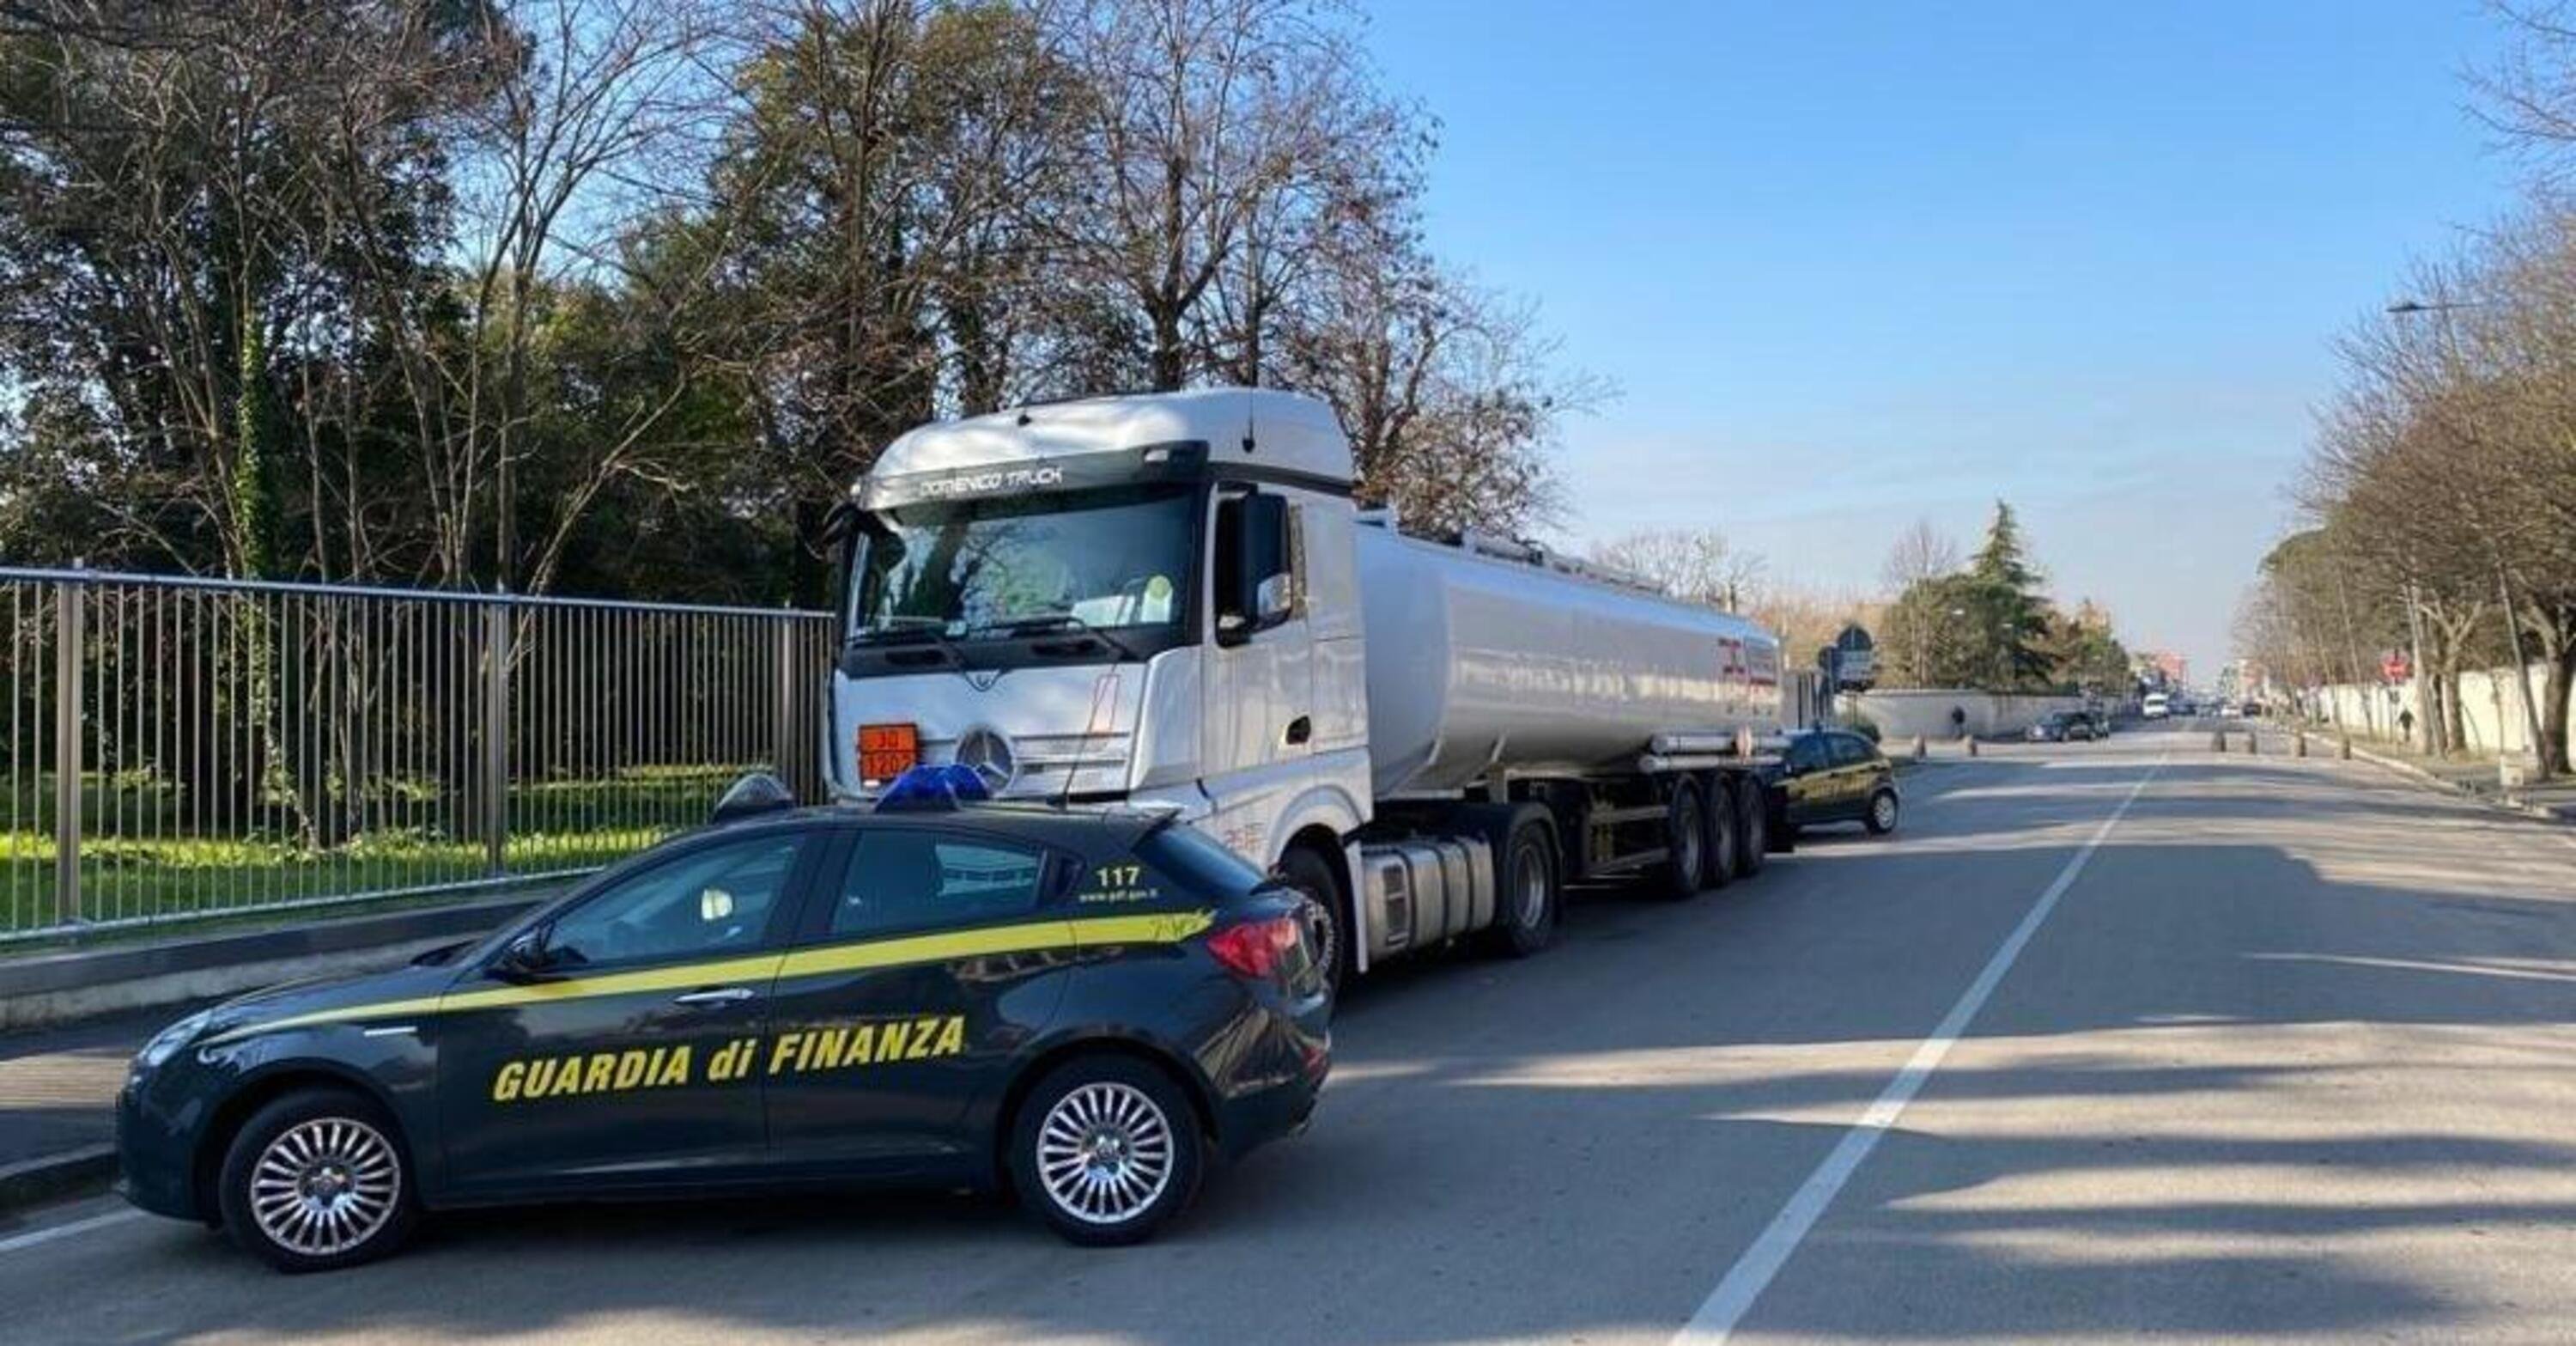 Traffico illecito di gasolio, sequestrati a Treviso 61mila litri dalla Guardia di finanza